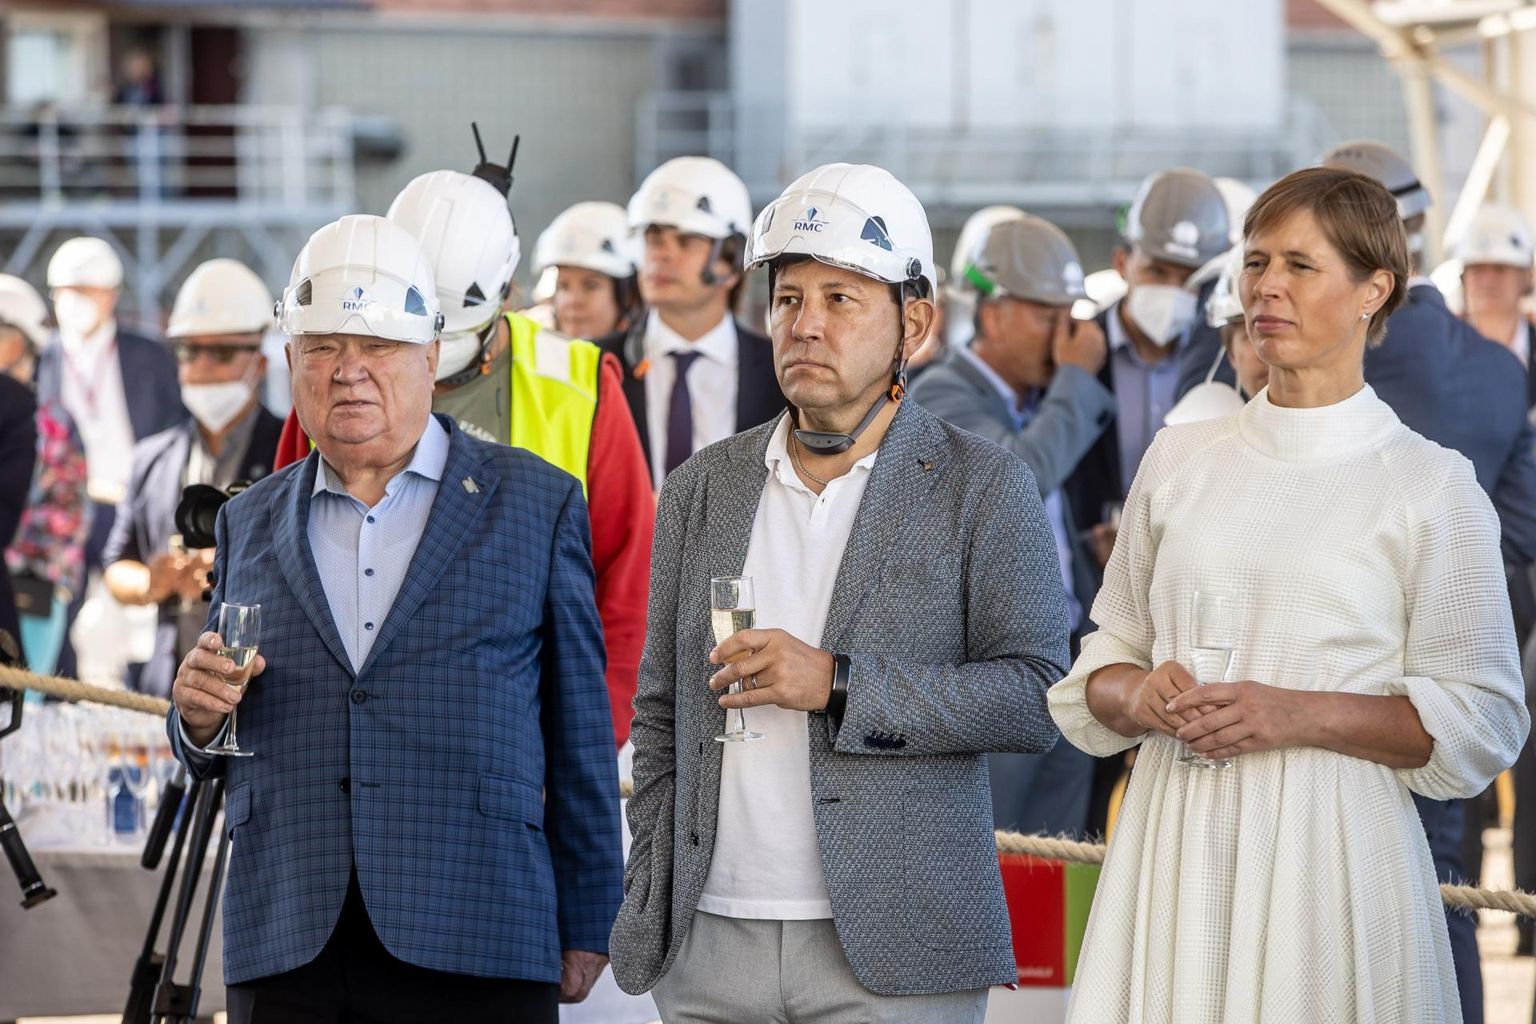 Kaks nädalat tagasi toimus Tallinki uue shuttle-laeva MyStar ristimine ja vettelaskmine Rauma laevatehases, kus osales president Kersti Kaljulaid. Tallinki nõukogu liikmed Toivo Ninnas (vasakul) ja Enn Pant (keskel) on juba märkinud miljonite eurode väärtuses Tallinki aktsiaid. 